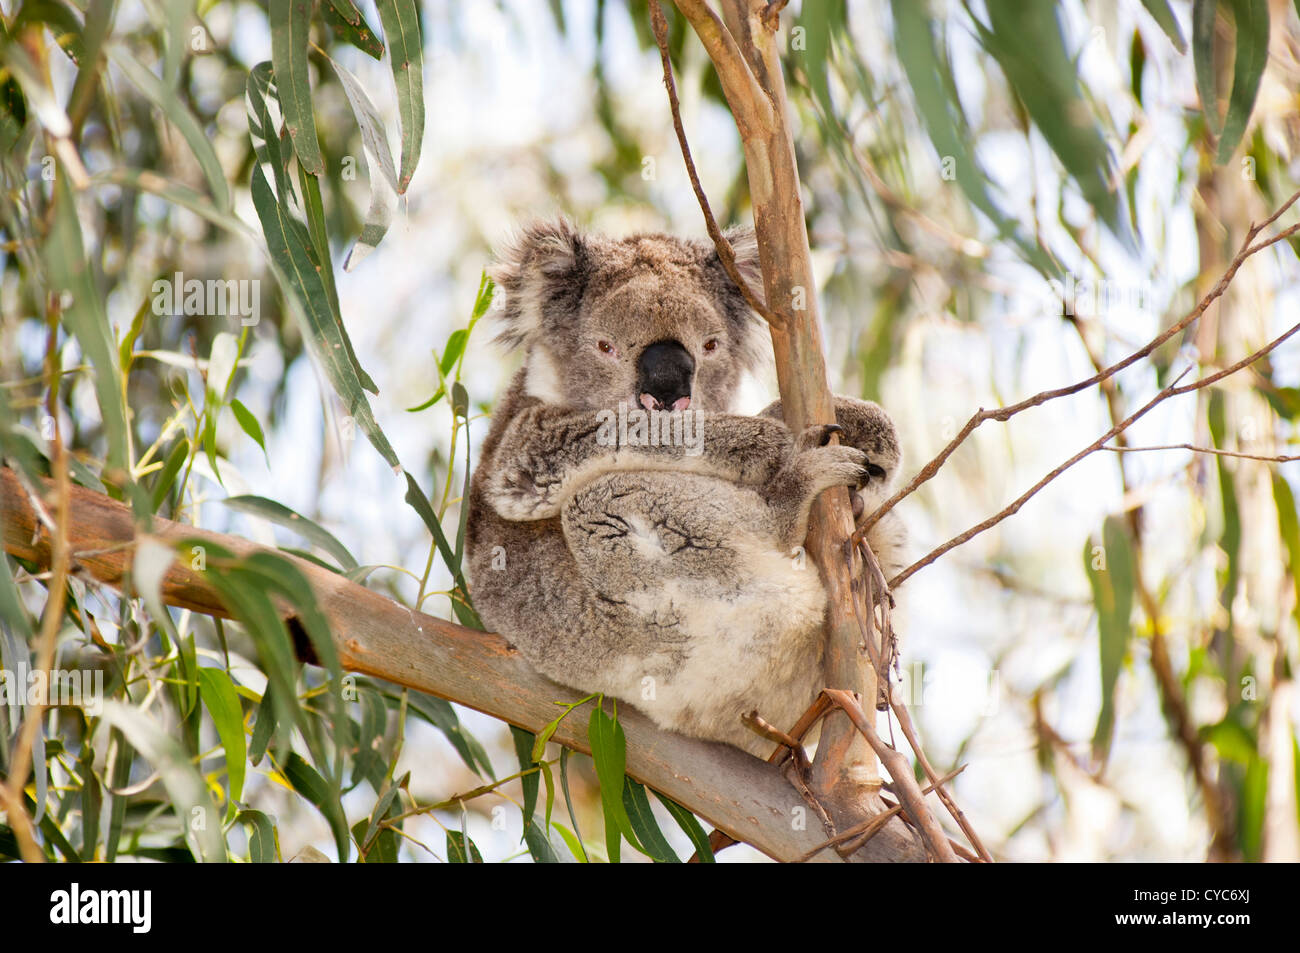 Koala bear in the wild in gum trees in Australia Stock Photo